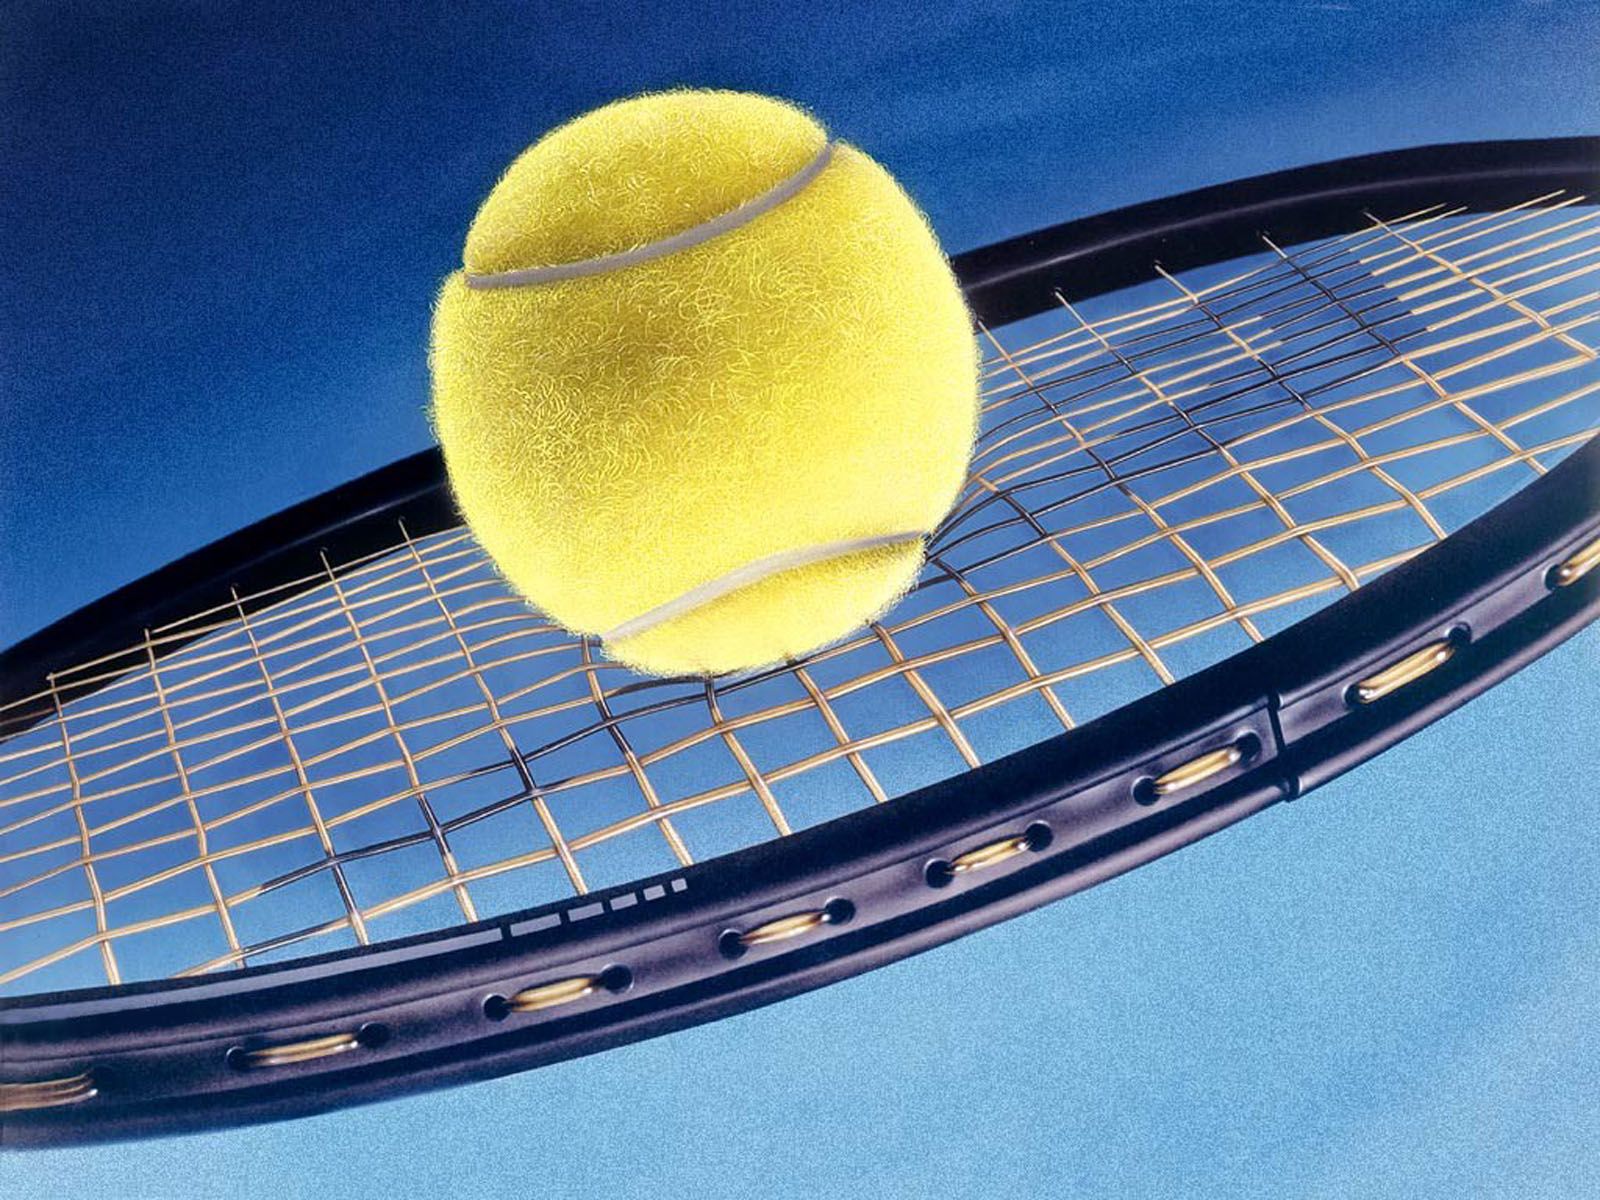 Fondos de tenis 1 | Club de tenis Cavan Lawn